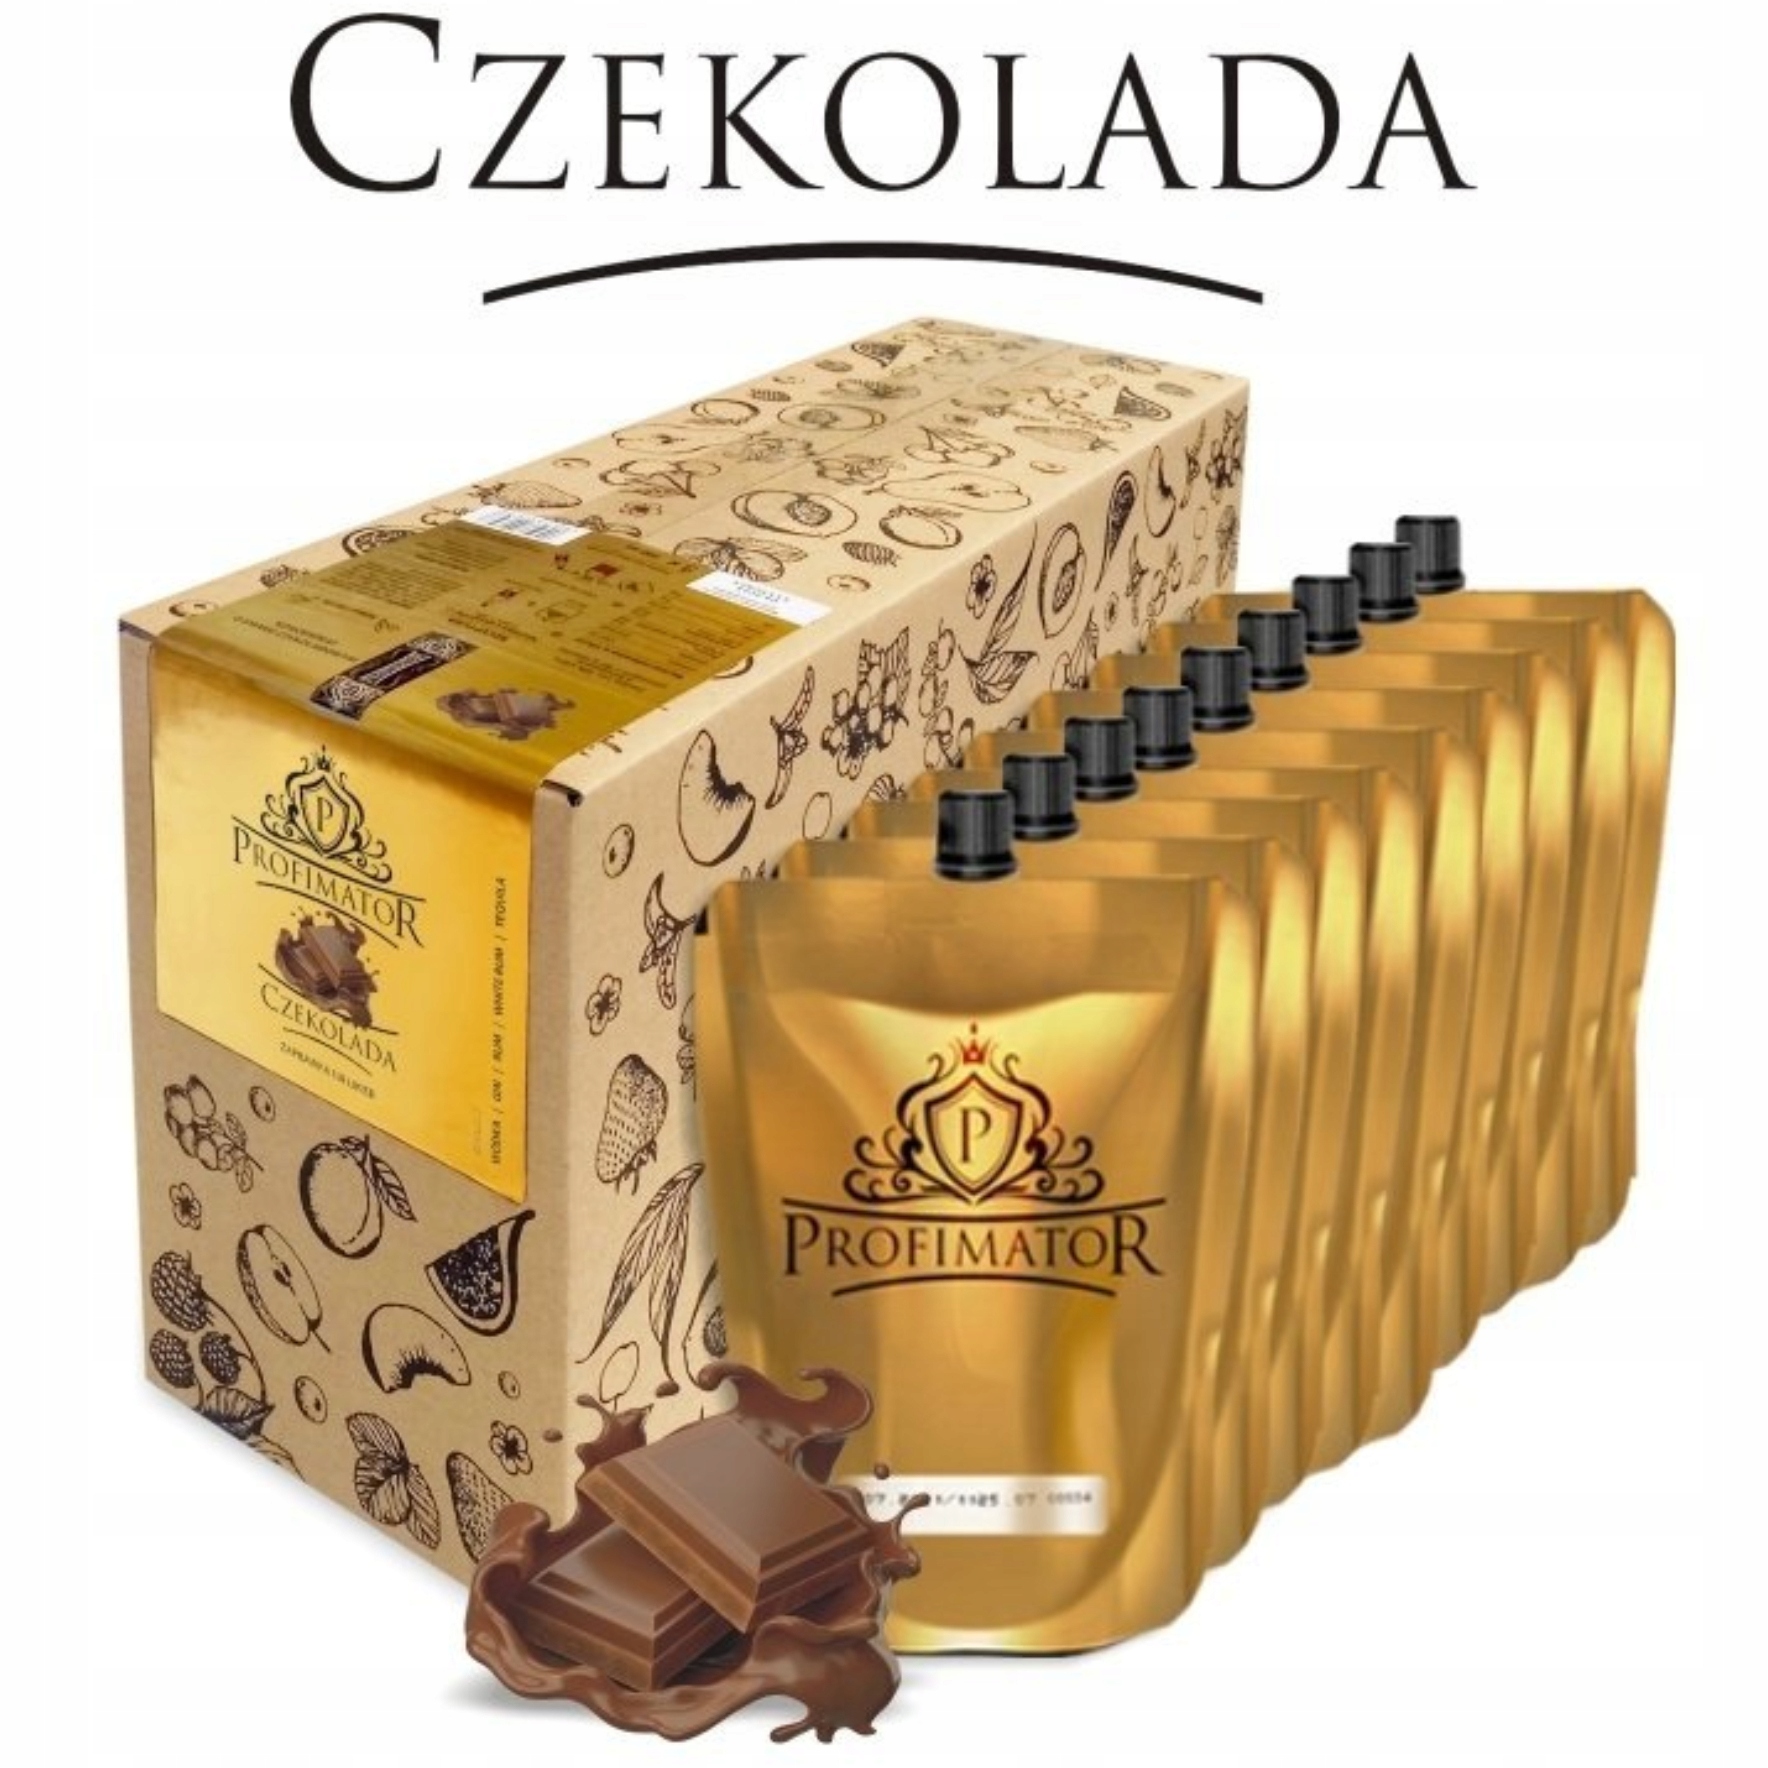 Zaprawka na likier CZEKOLADA box 9x300ml (2,7 litra)